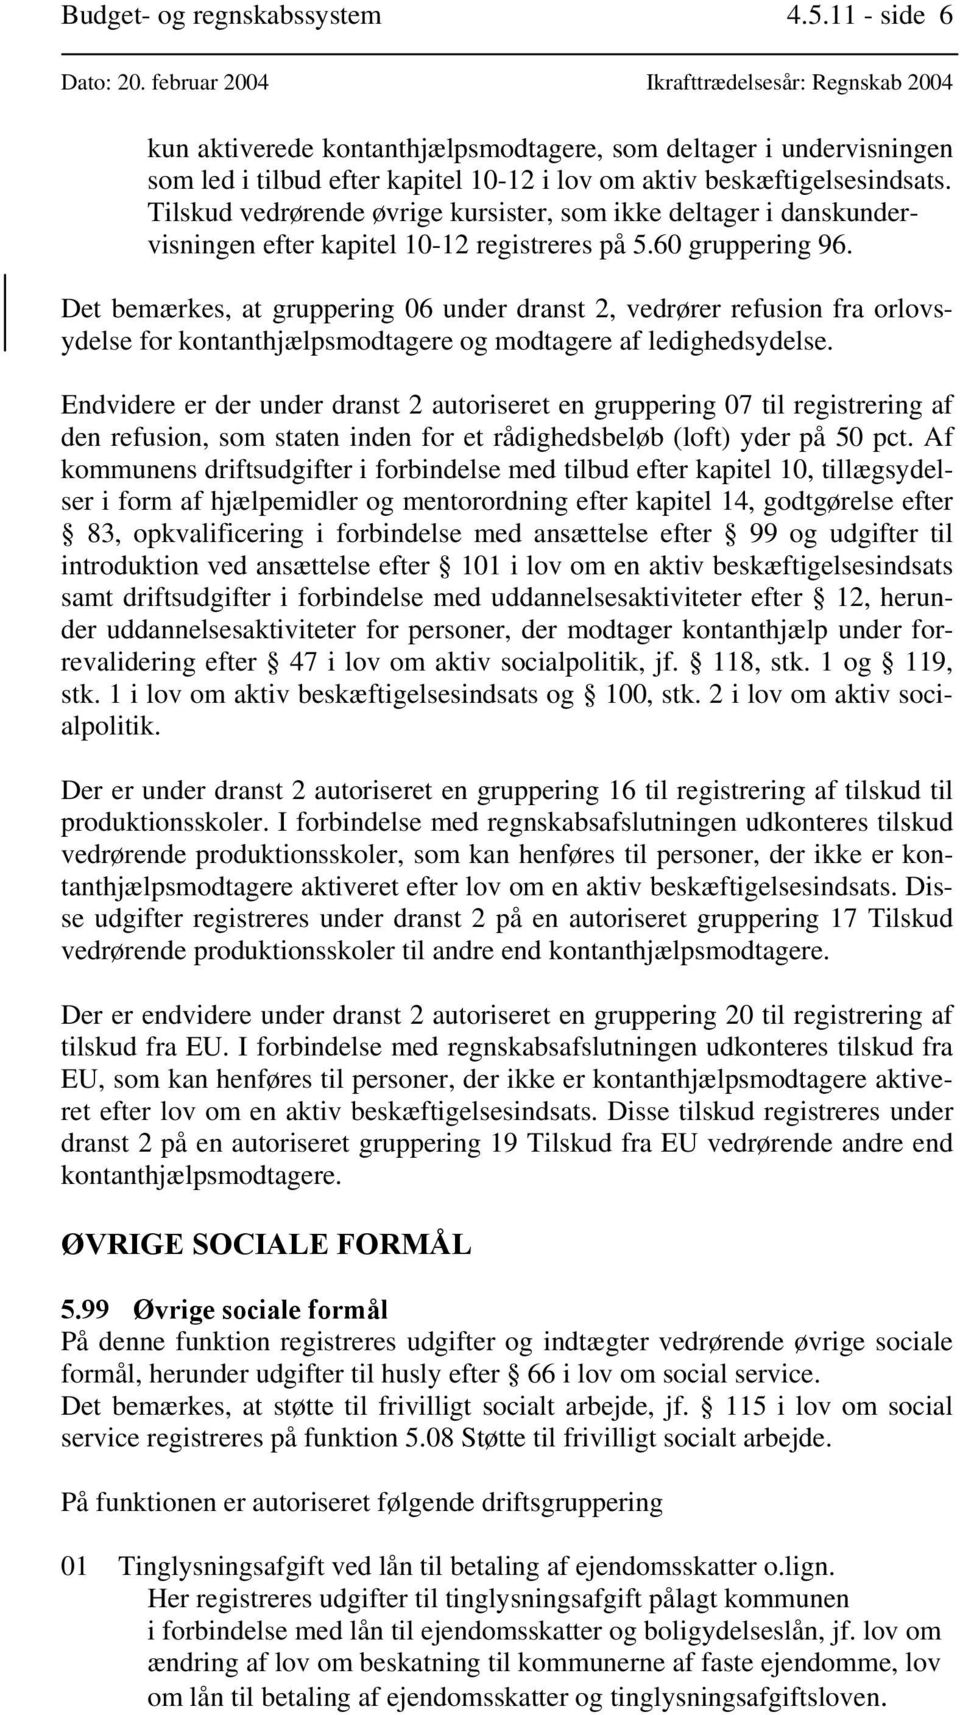 Tilskud vedrørende øvrige kursister, som ikke deltager i danskundervisningen efter kapitel 10-12 registreres på 5.60 gruppering 96.